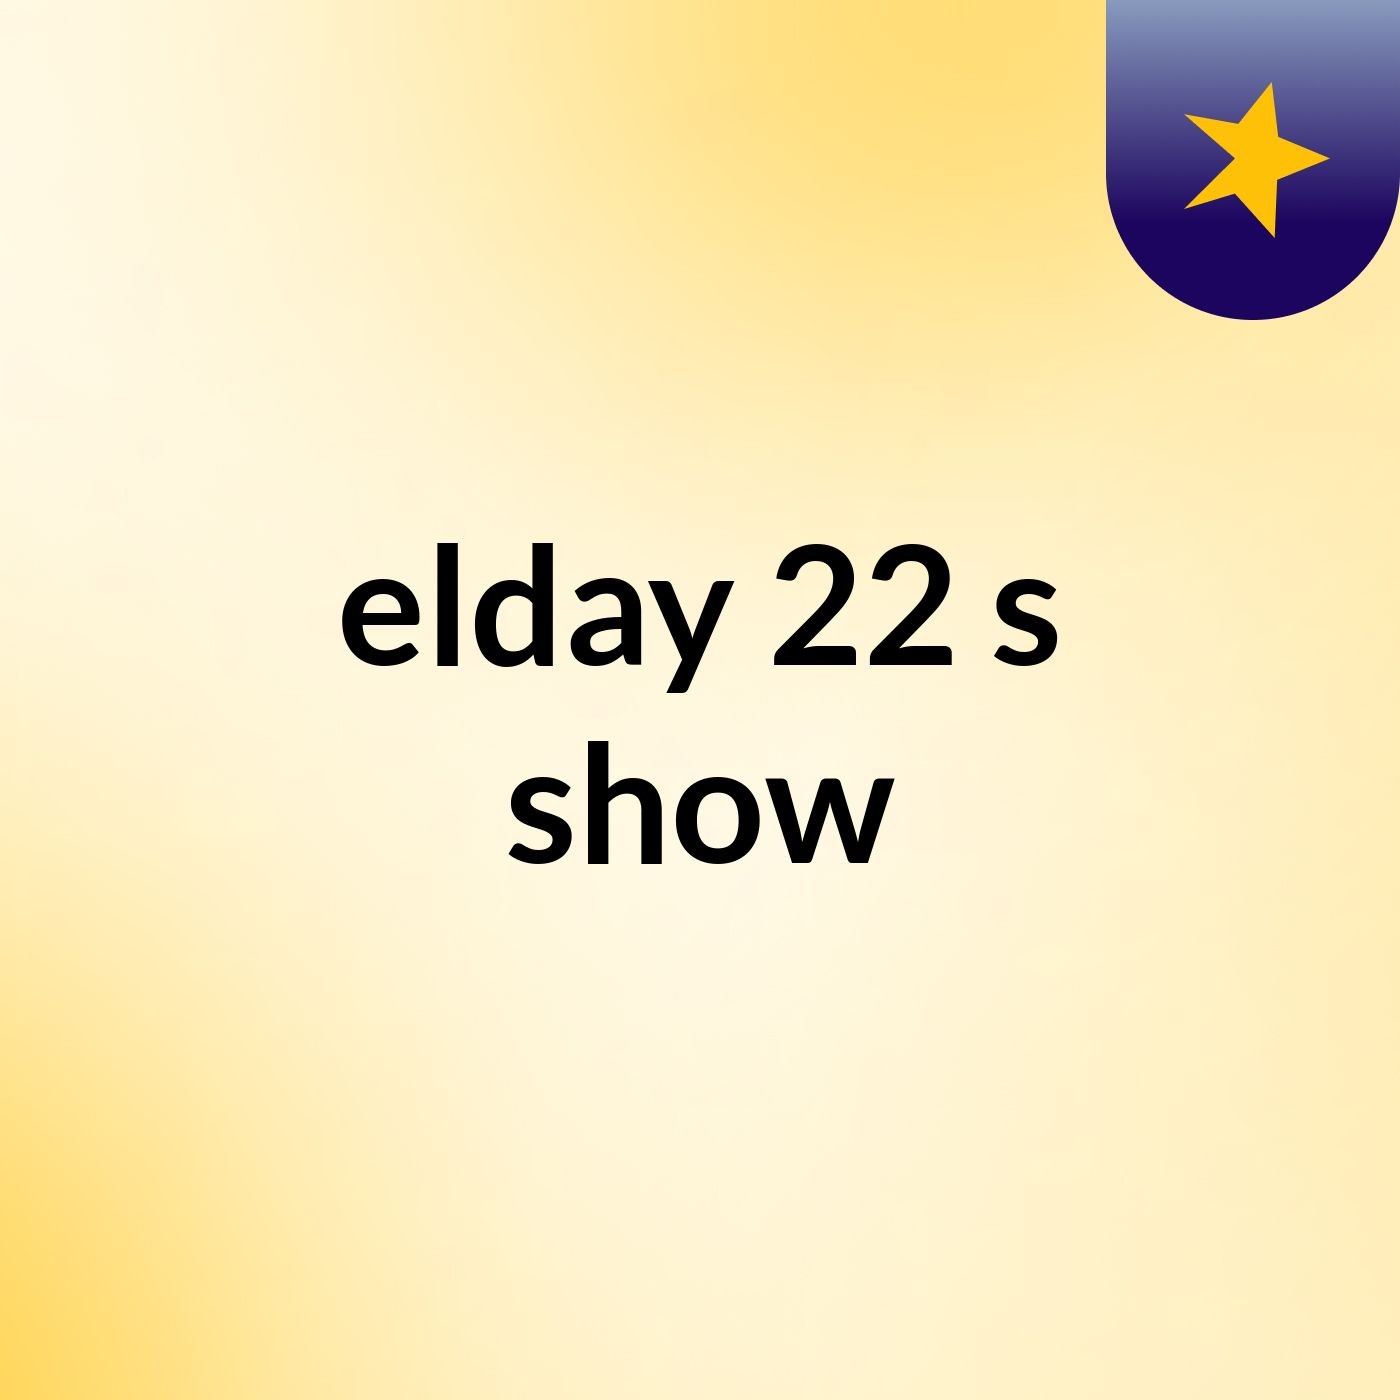 elday 22's show